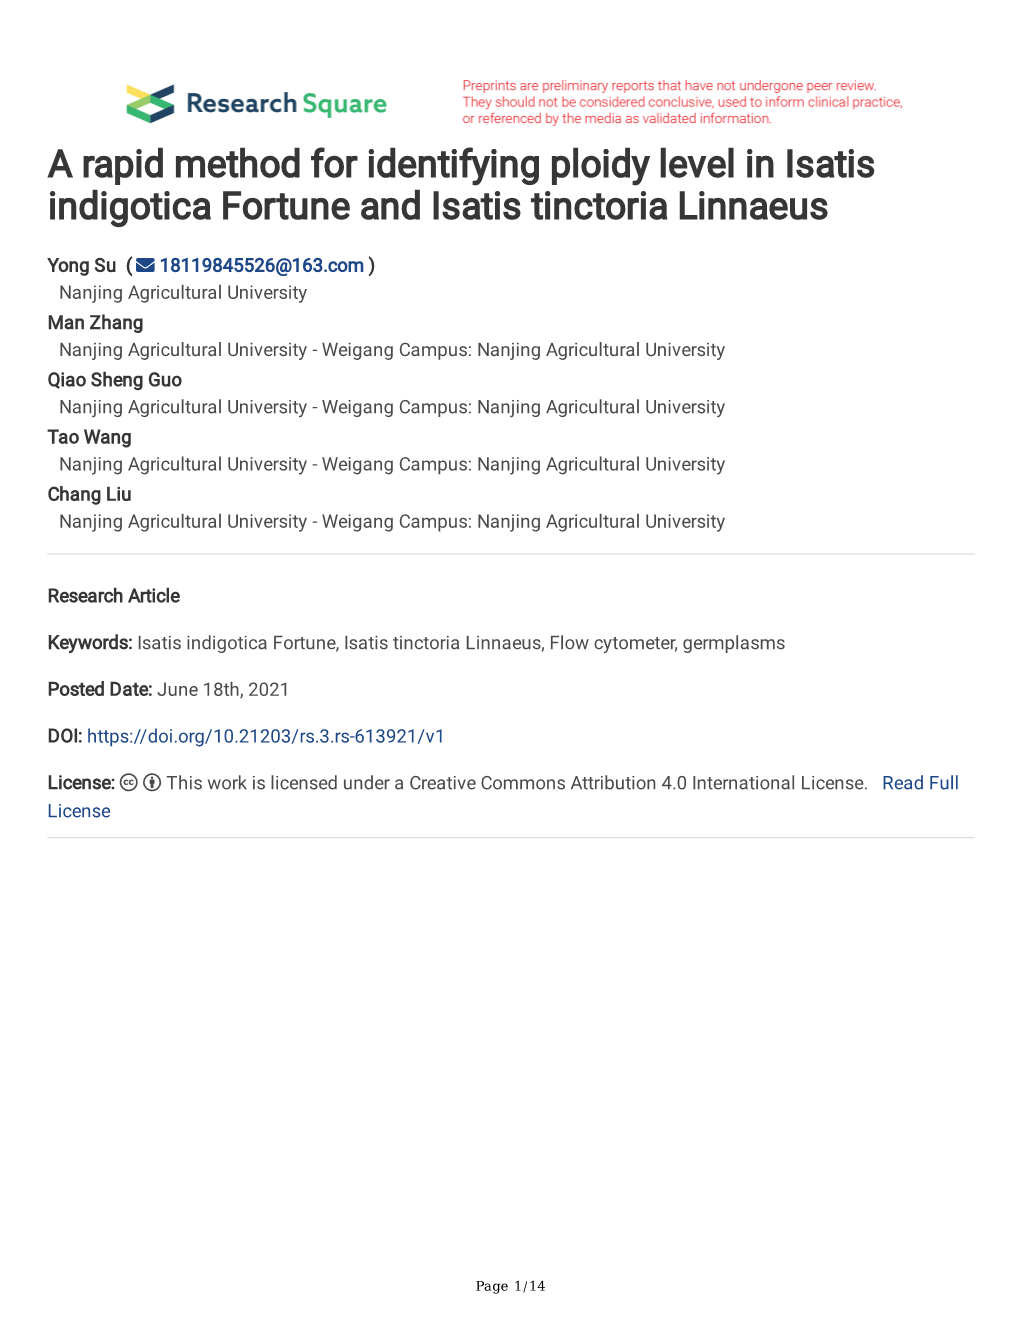 A Rapid Method for Identifying Ploidy Level in Isatis Indigotica Fortune and Isatis Tinctoria Linnaeus